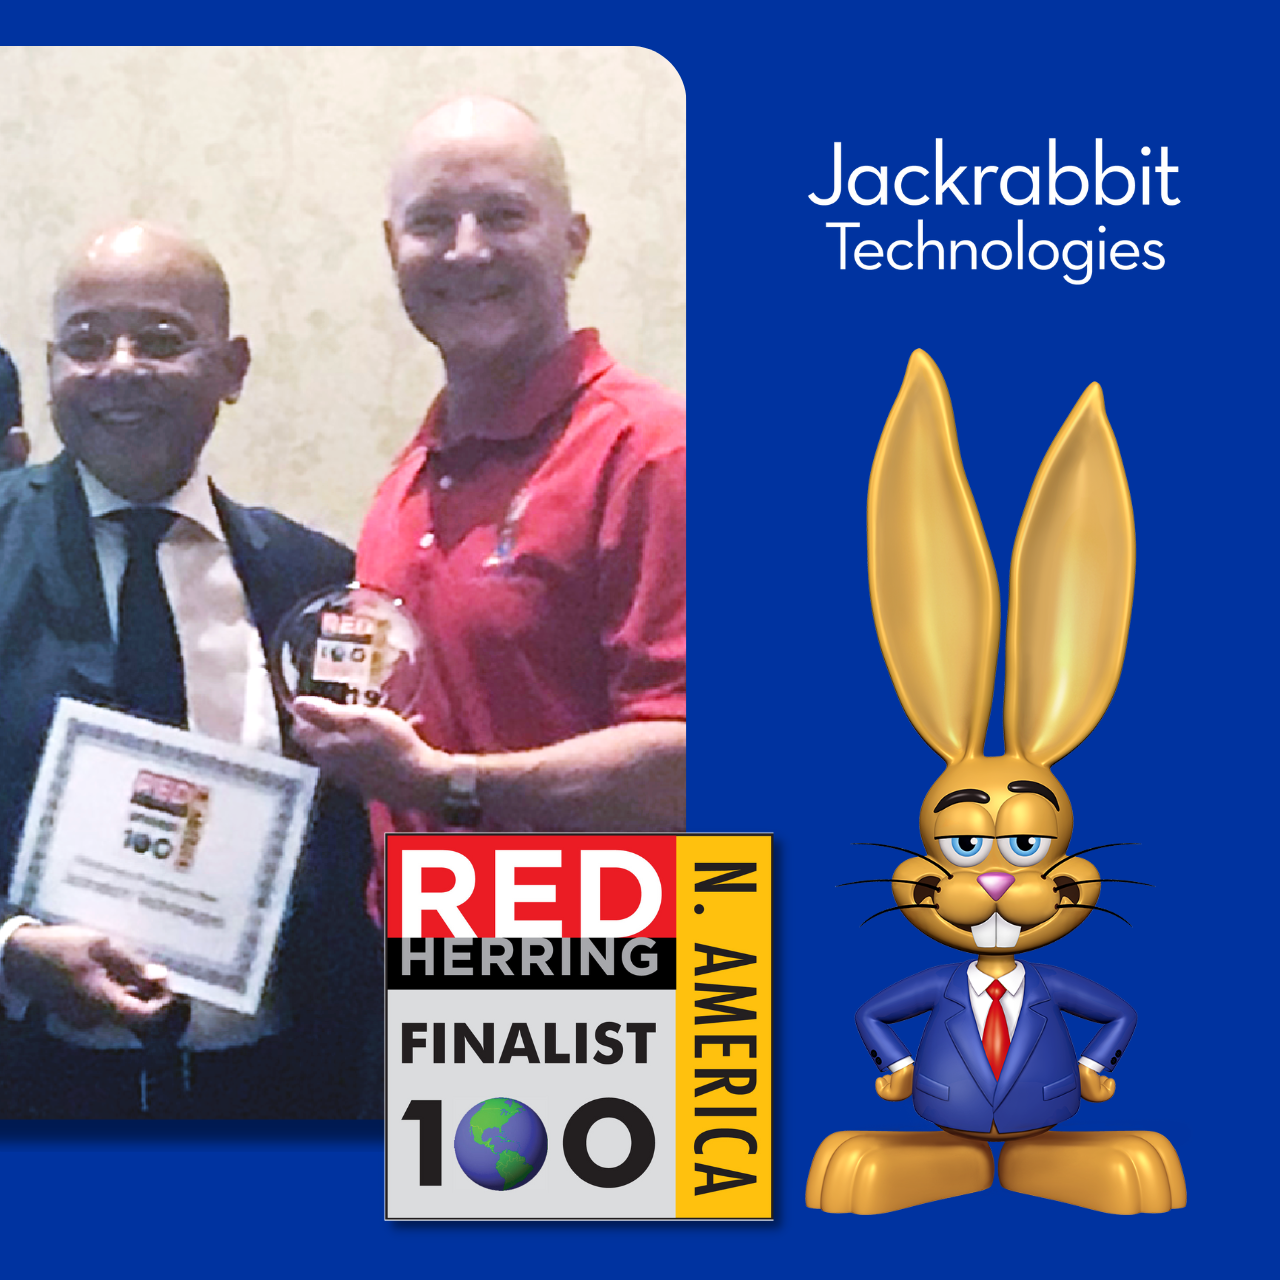 jackrabbit finalist 2019 red herring